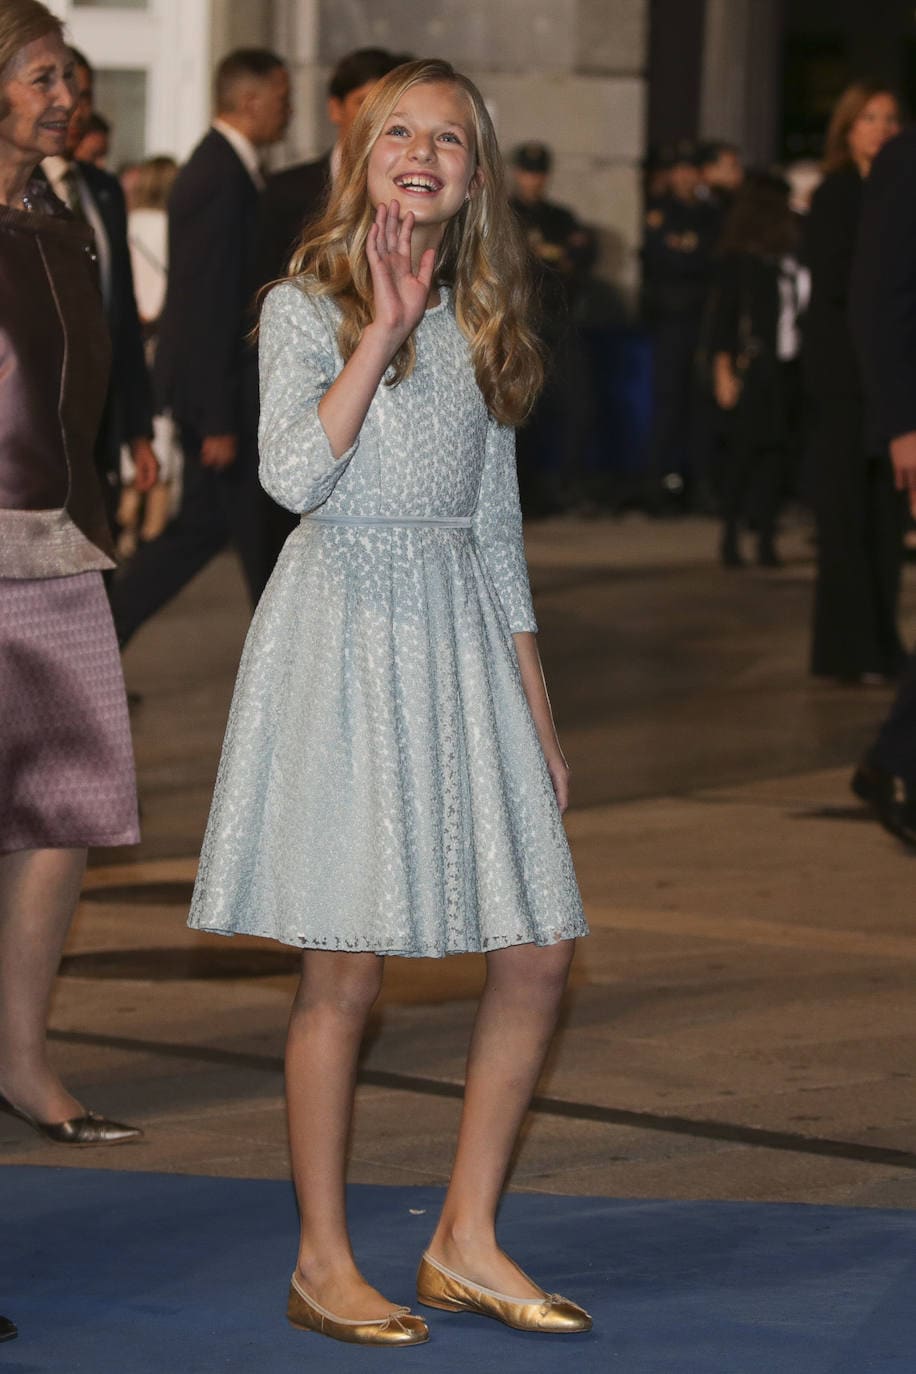 En 2019, la princesa de Asturias debutó en los premios que llevan su nombre. Su imagen era mucho más juvenil, con un vestido en azul celeste, y bailarinas doradas. 